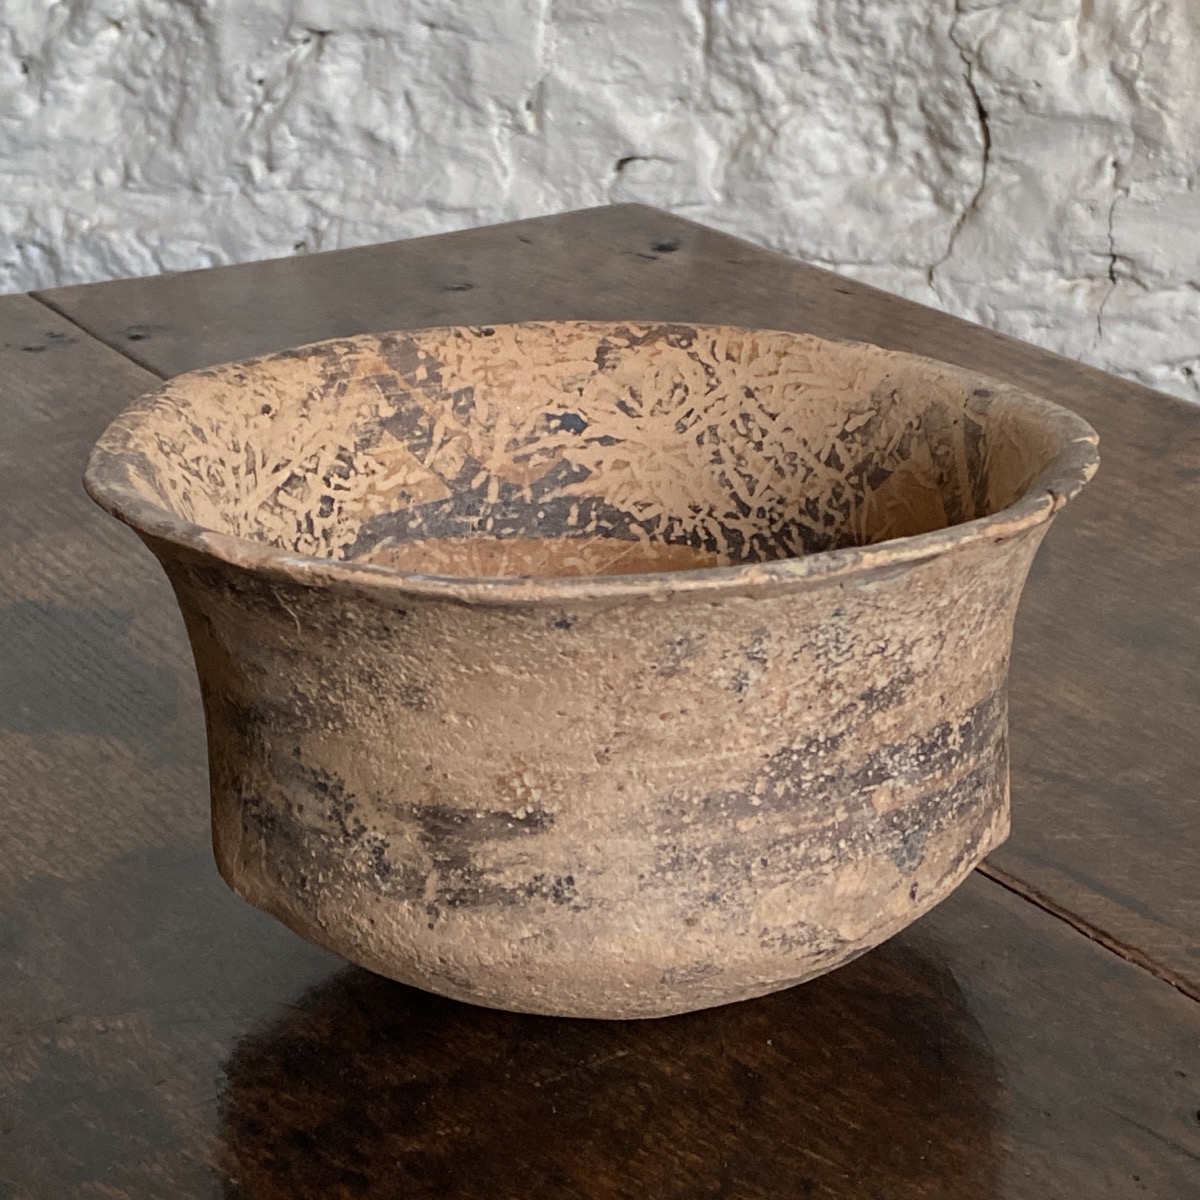 Chinese Neolithic pottery bowl, Majiayao, Banshan period, 2,500 BC